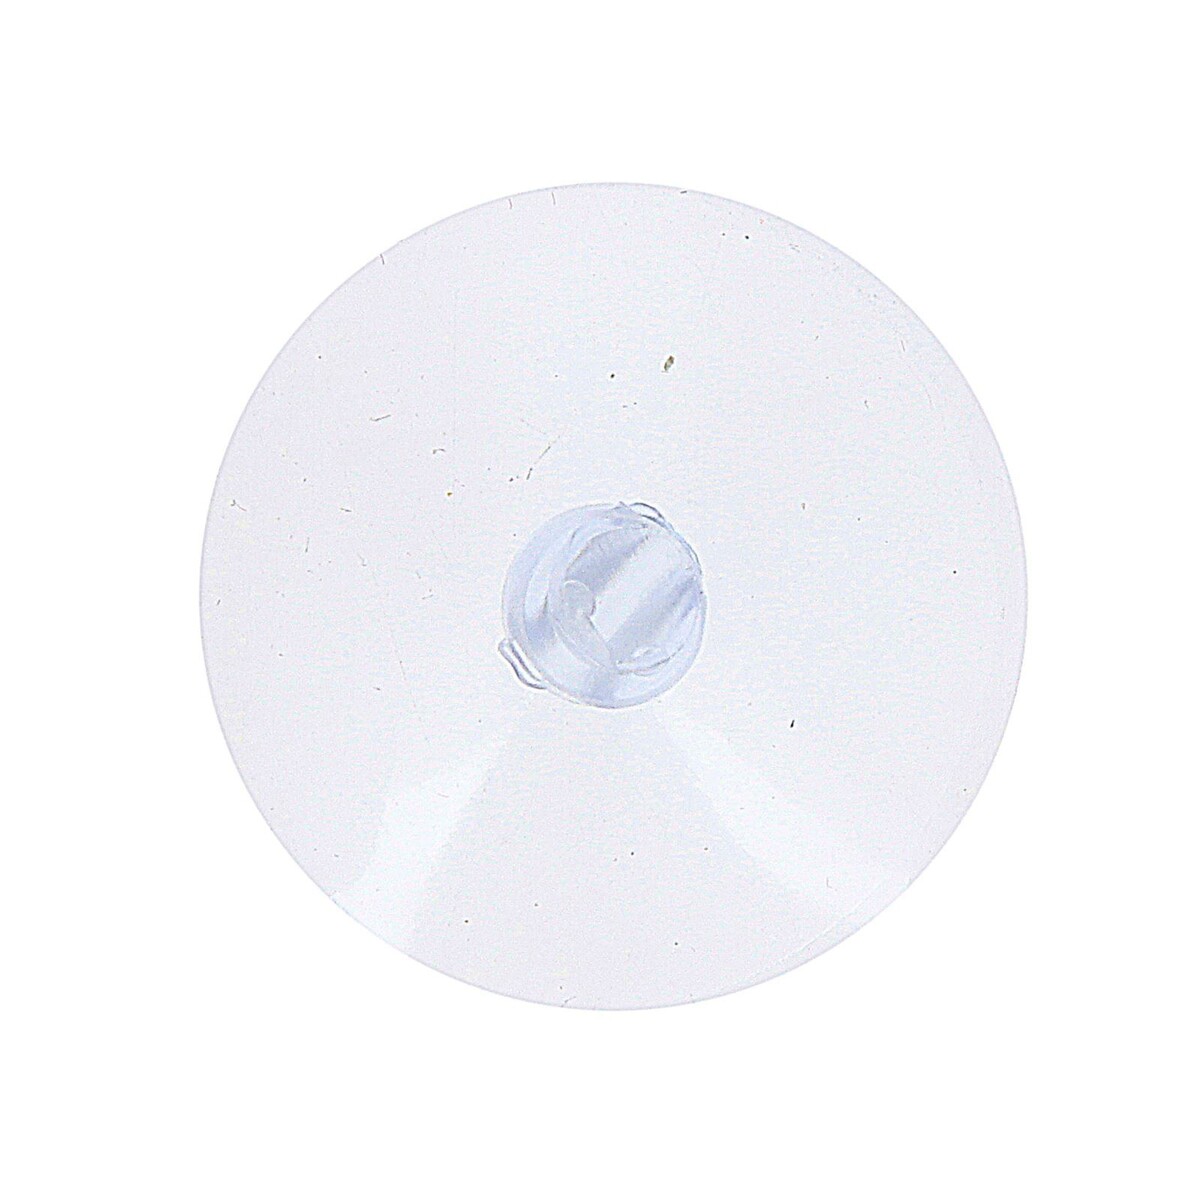 Присоска с дыркой сбоку, набор10 шт., диаметр: 3 см присоска с дыркой сбоку набор10 шт диаметр 3 см